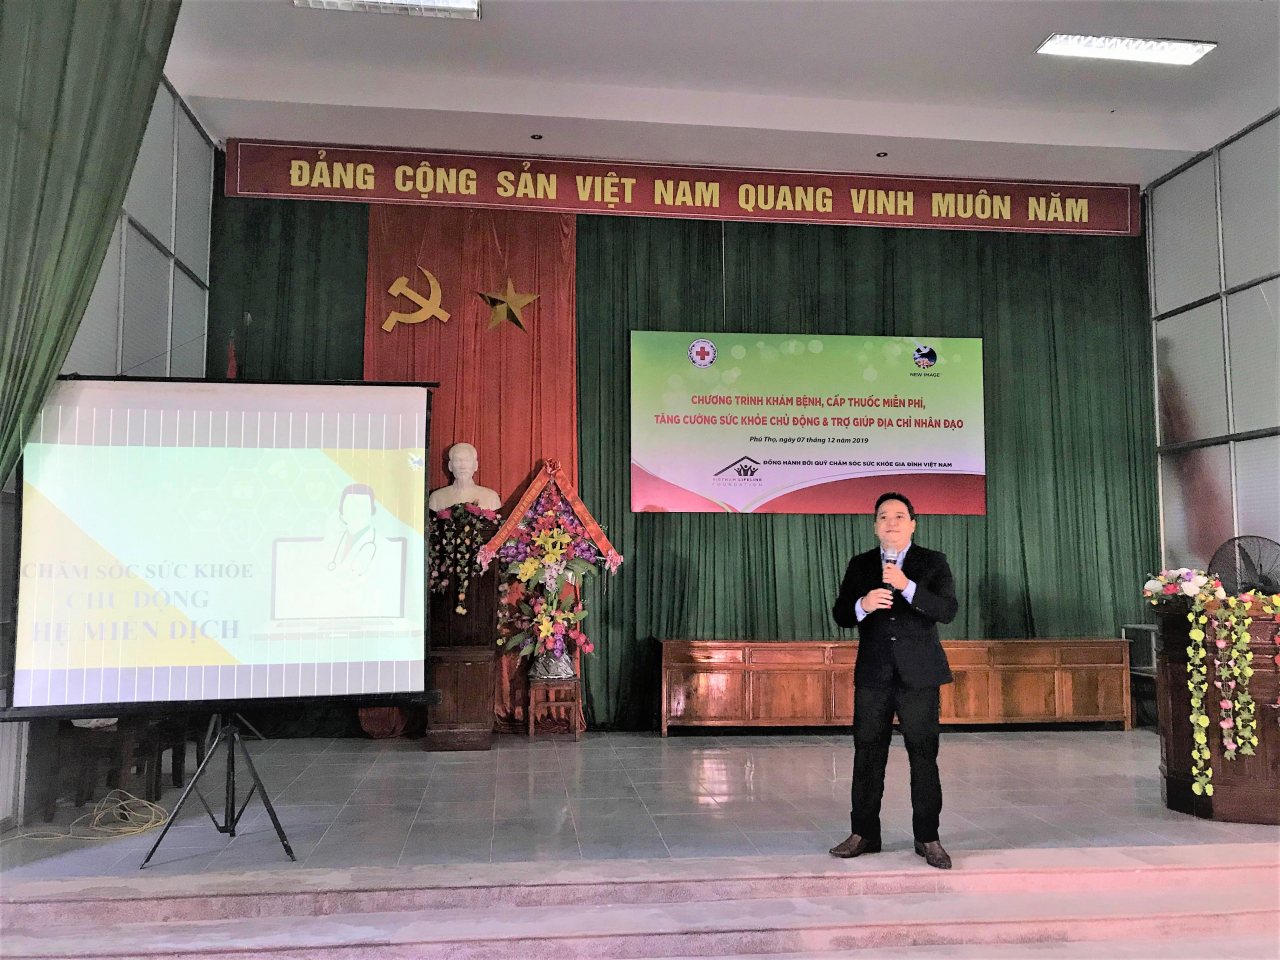 Chuyên gia dinh dưỡng của New Image Việt Nam chia sẻ kiến thức về chăm sóc sức khỏe chủ động